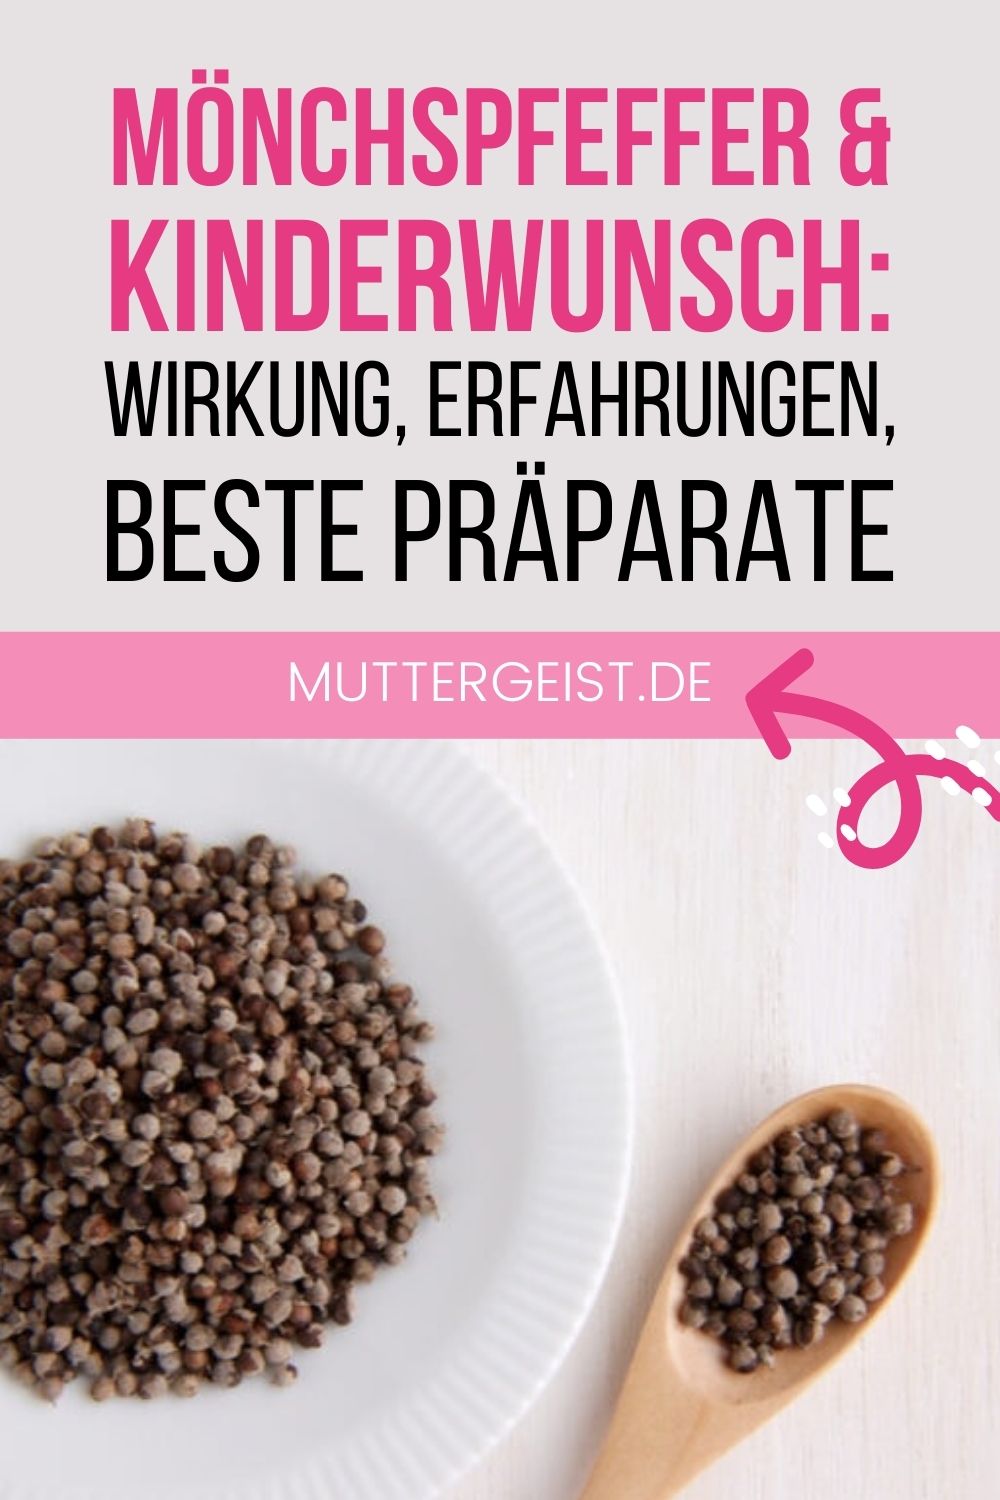 Mönchspfeffer & Kinderwunsch – Wirkung, Erfahrungen, beste Präparate Pinterest